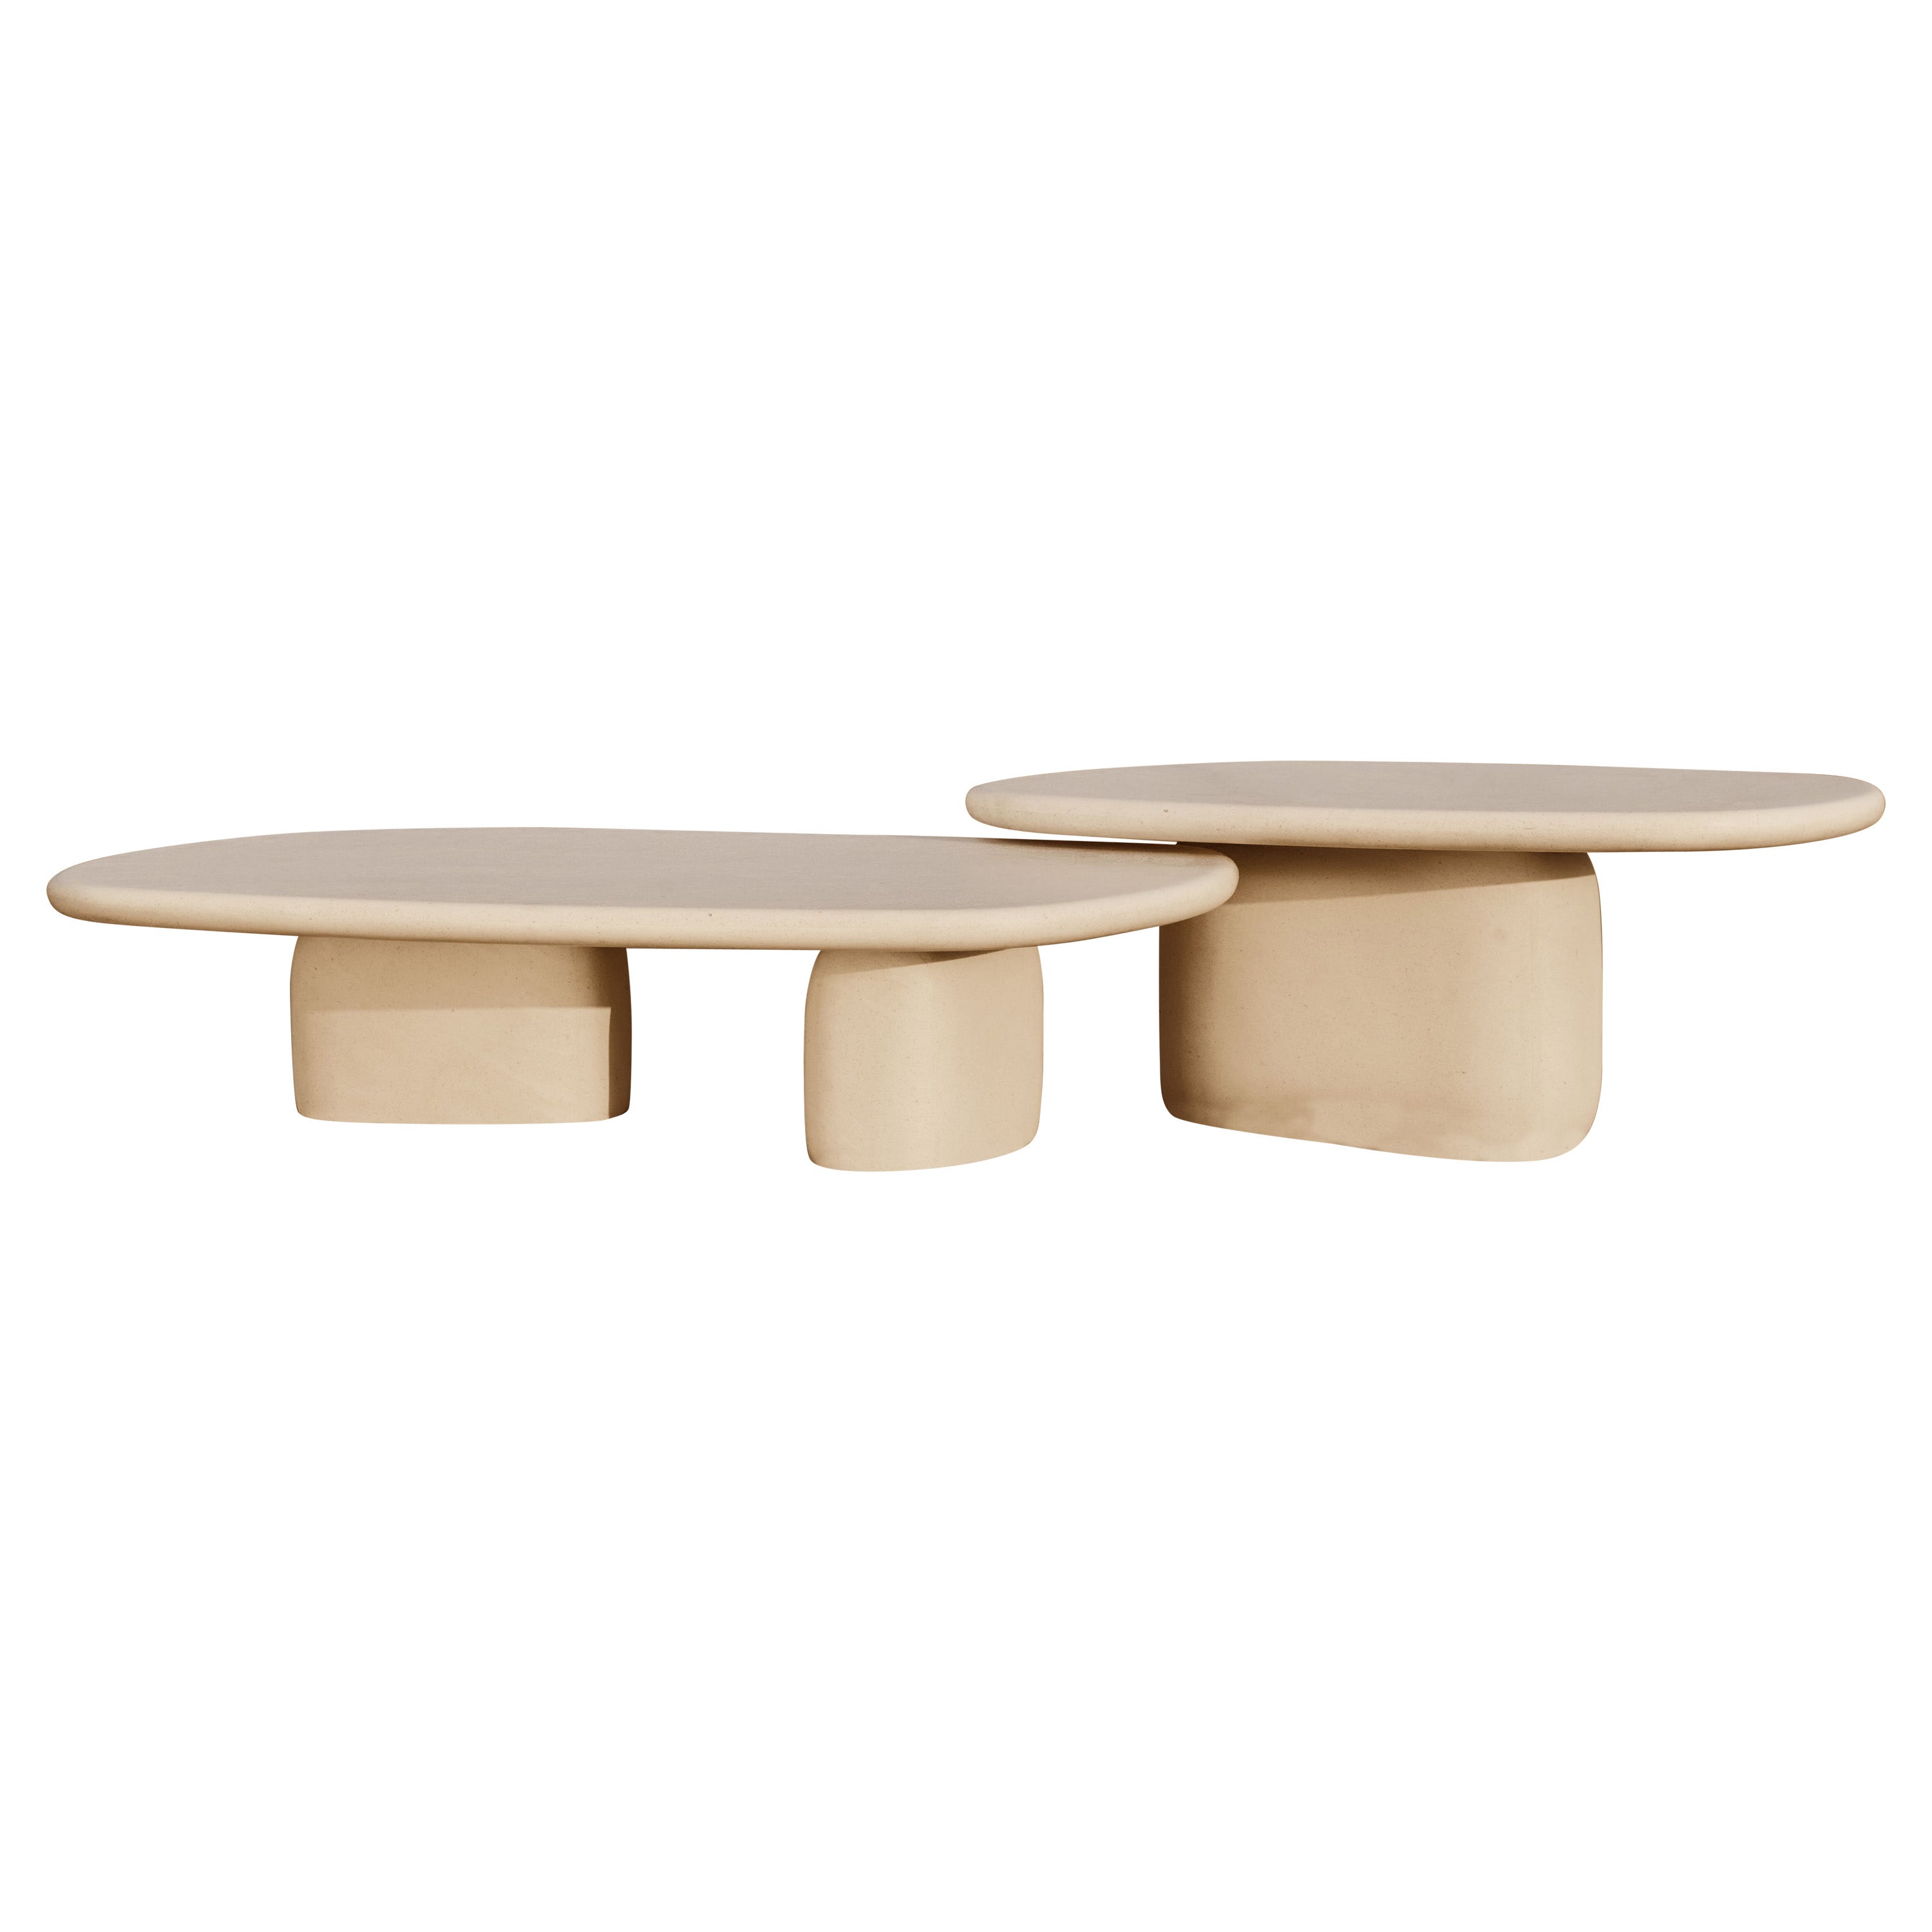 Limited Edition Hand-crafted Coffee Table Set- Kimoki & Kinoko For Sale